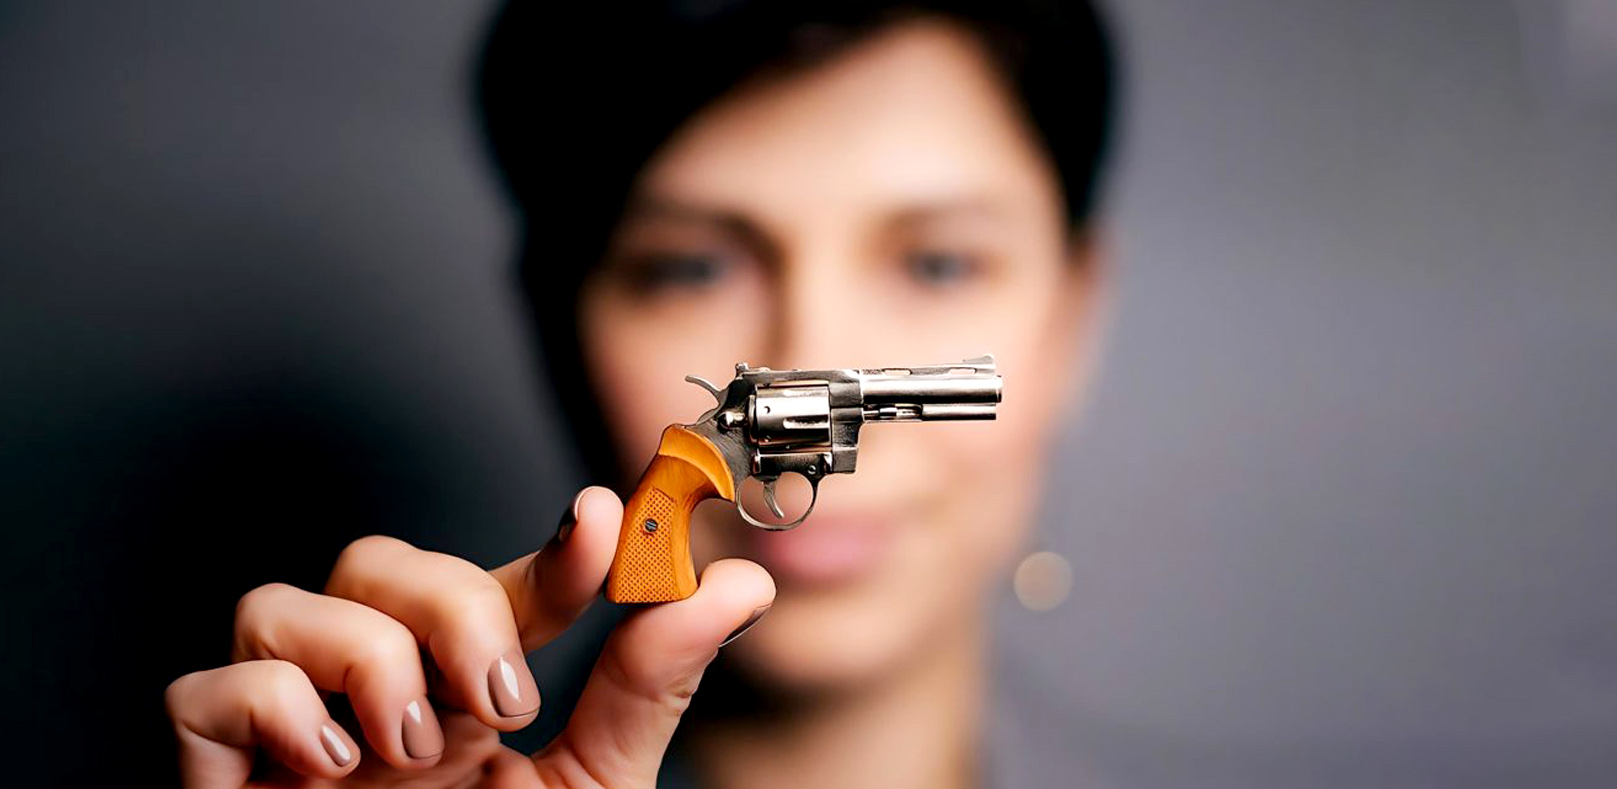 Miniature Gun Models That Can Shoot